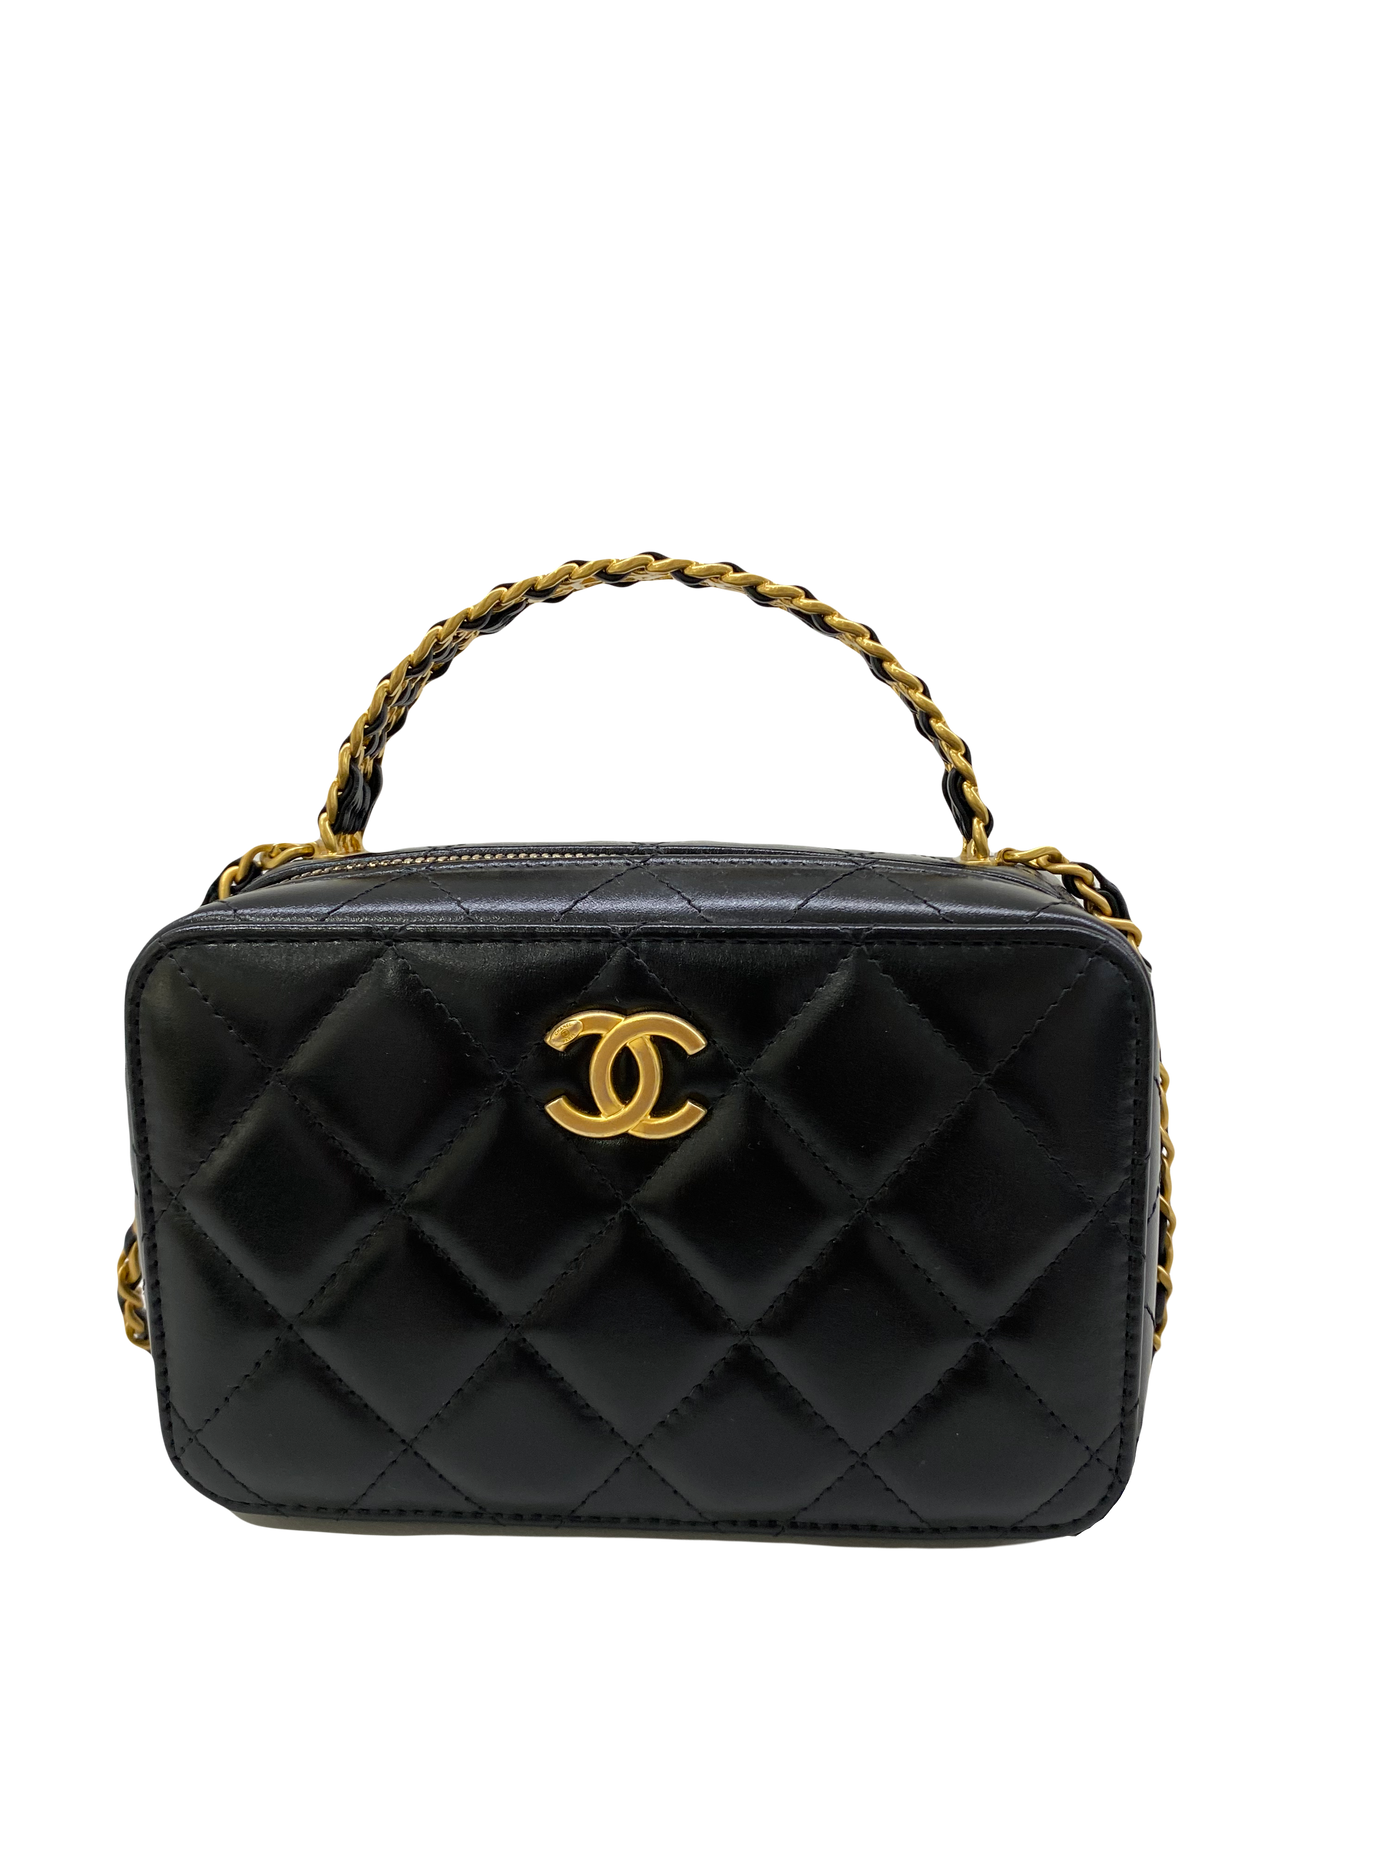 Chanel Vanity Top Handle Black Lambskin